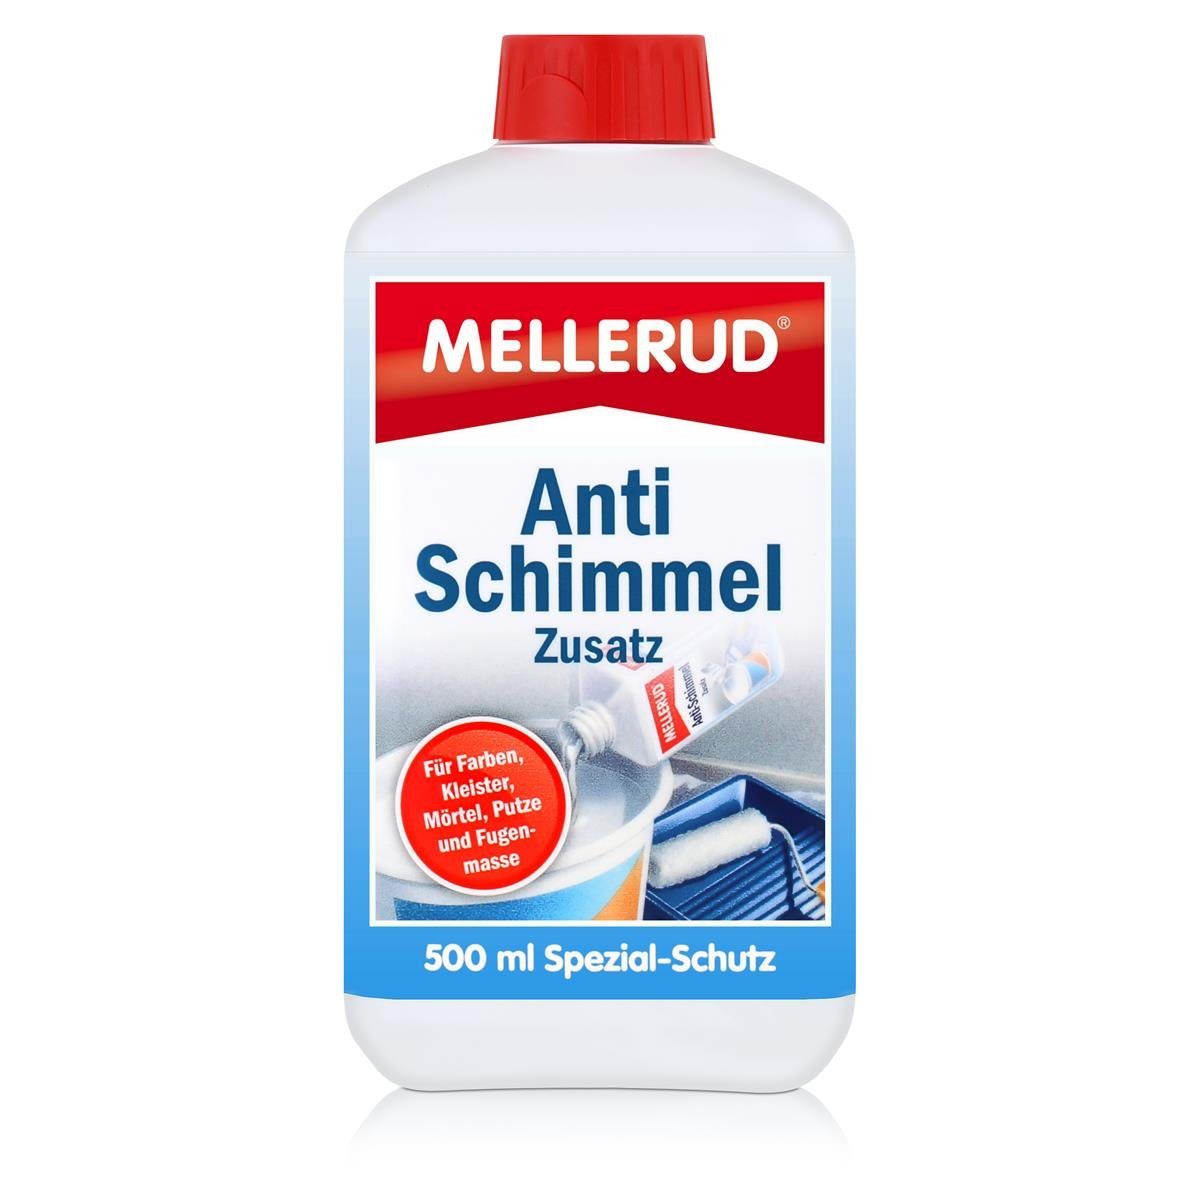 Mellerud Mellerud Anti Schimmel Zusatz 500 ml Spezialwaschmittel